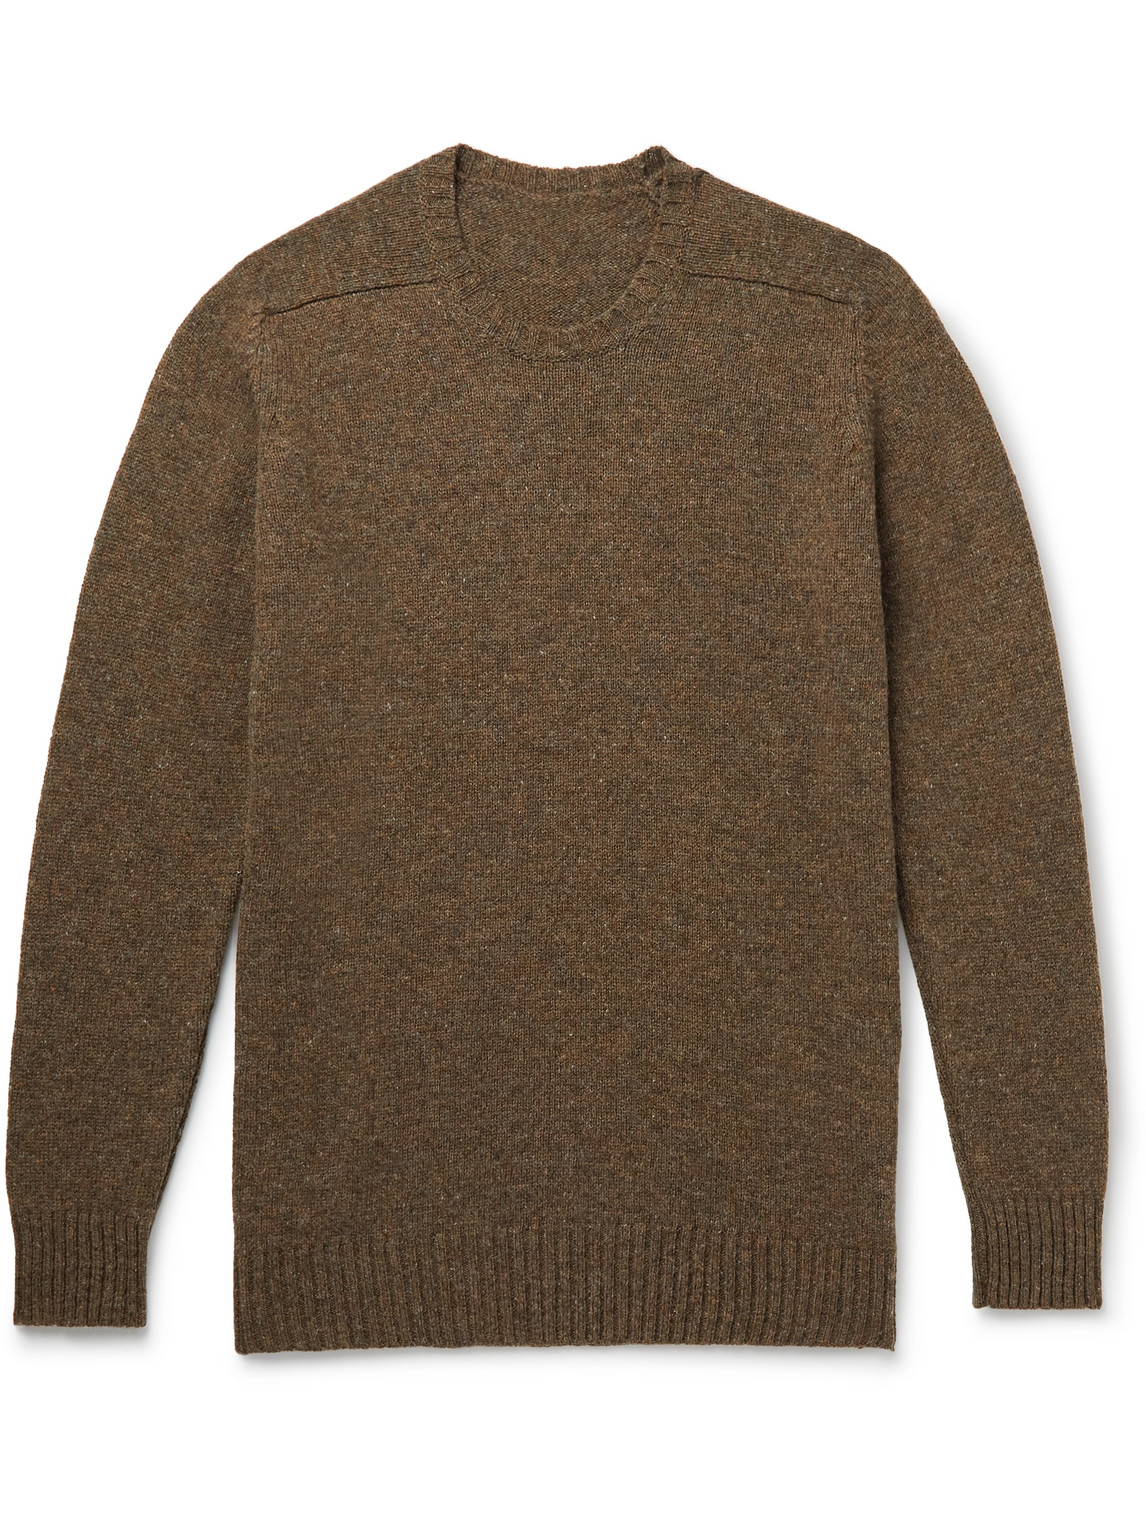 Anderson & Sheppard Shetland Wool Sweater In Brown